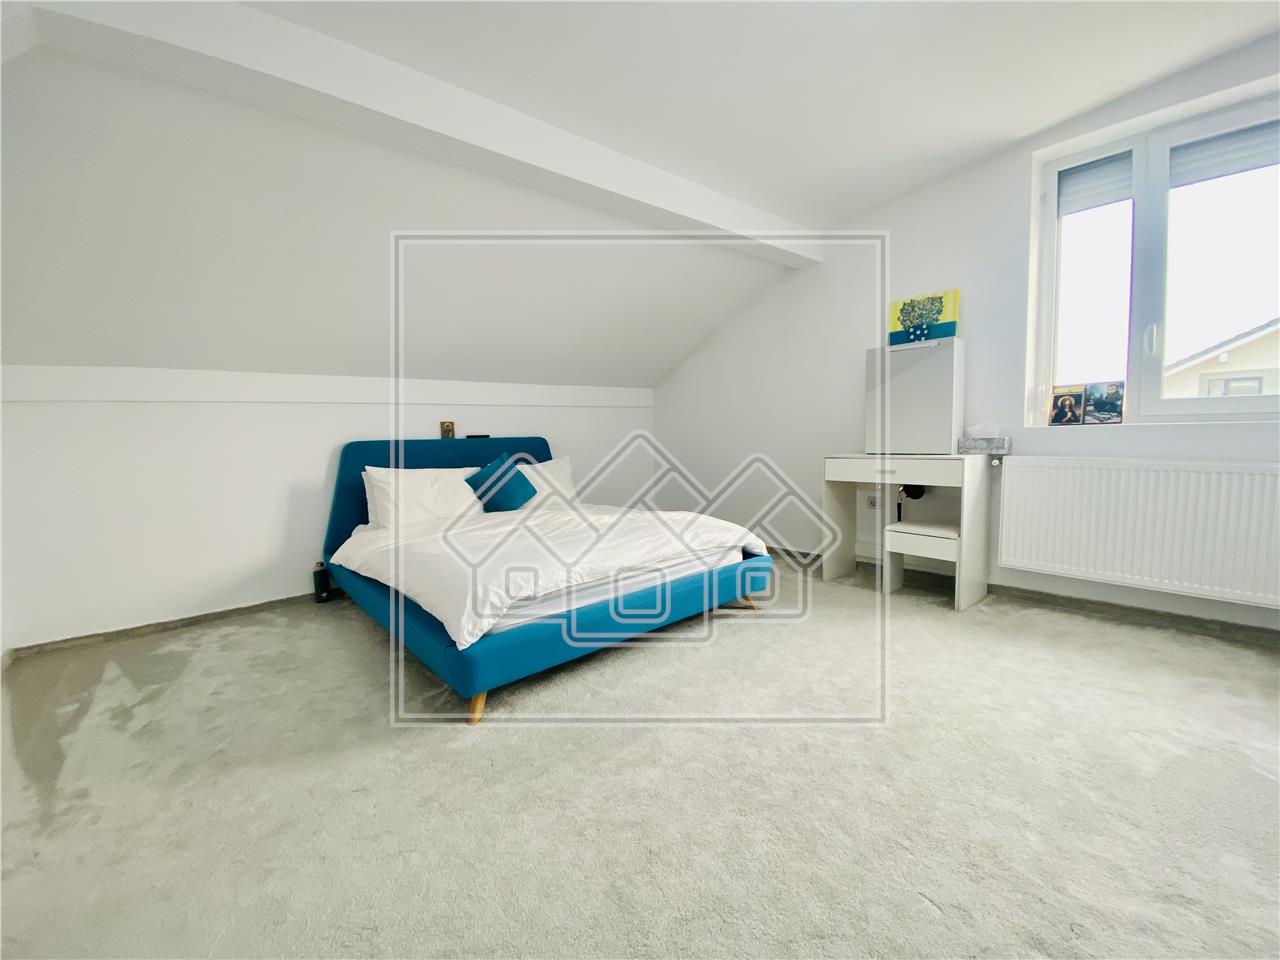 Wohnung zu verkaufen in Sibiu - 120 qm Nutzfl?che - Modern m?bliert -